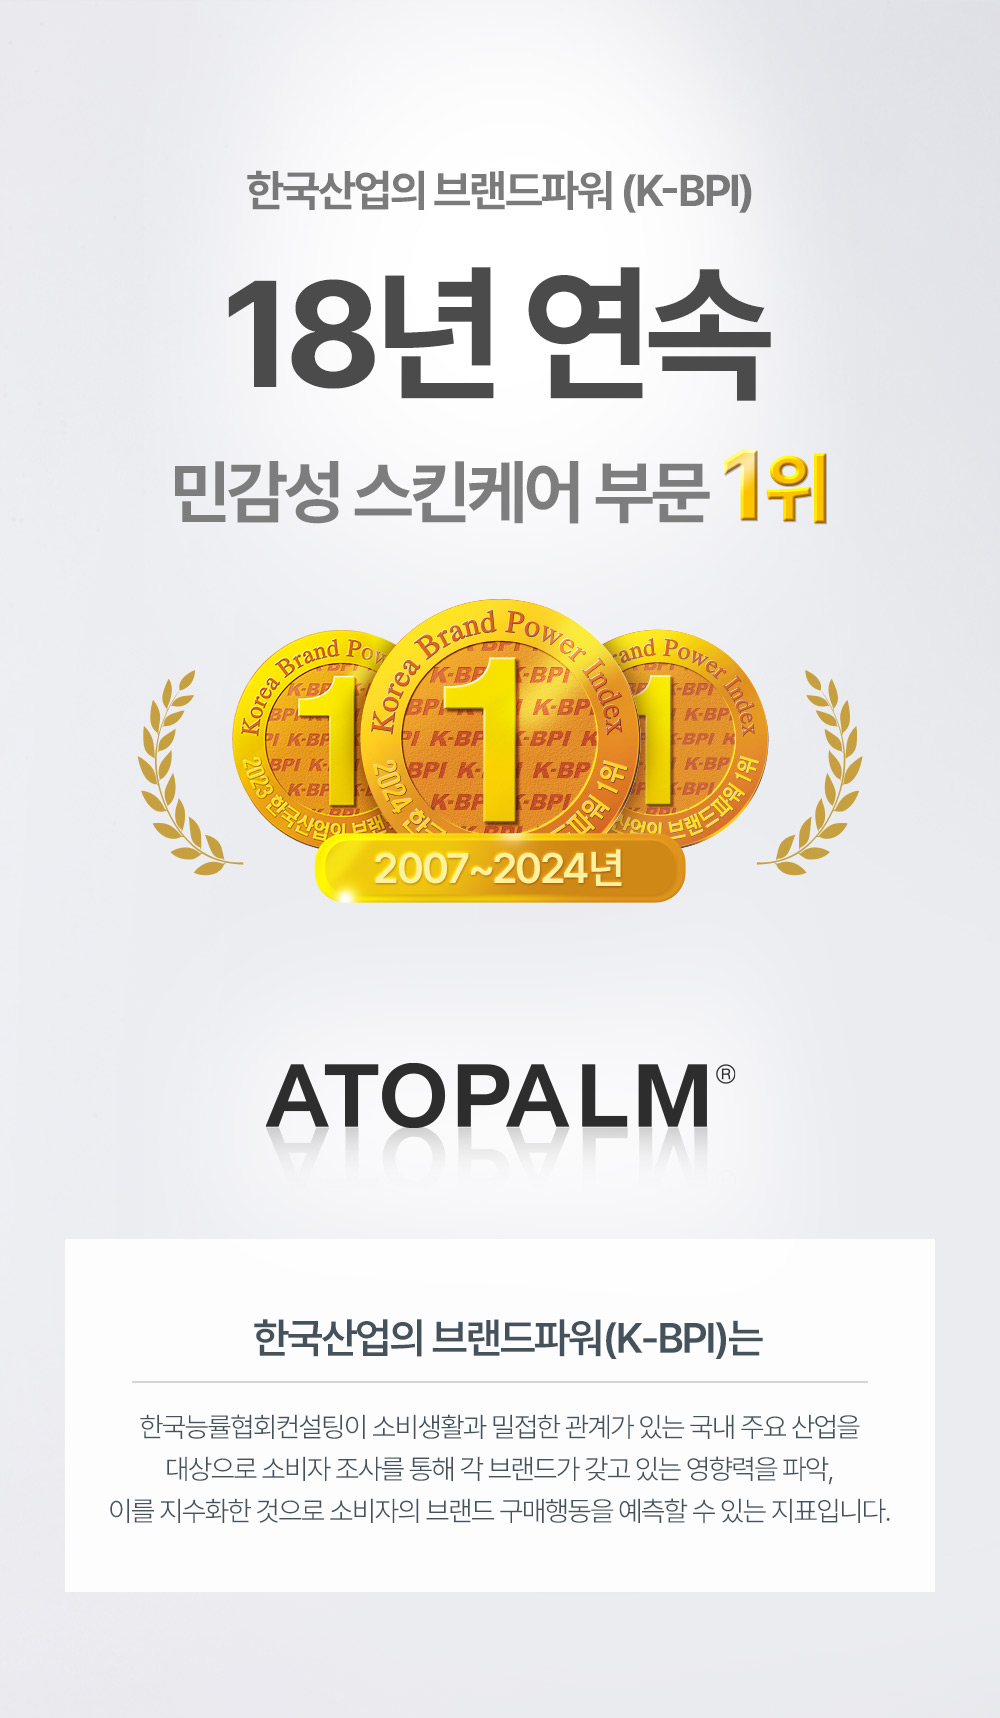 한국산업의 브랜드파워 17년 연속 민감성 스킨케어 부문 1위